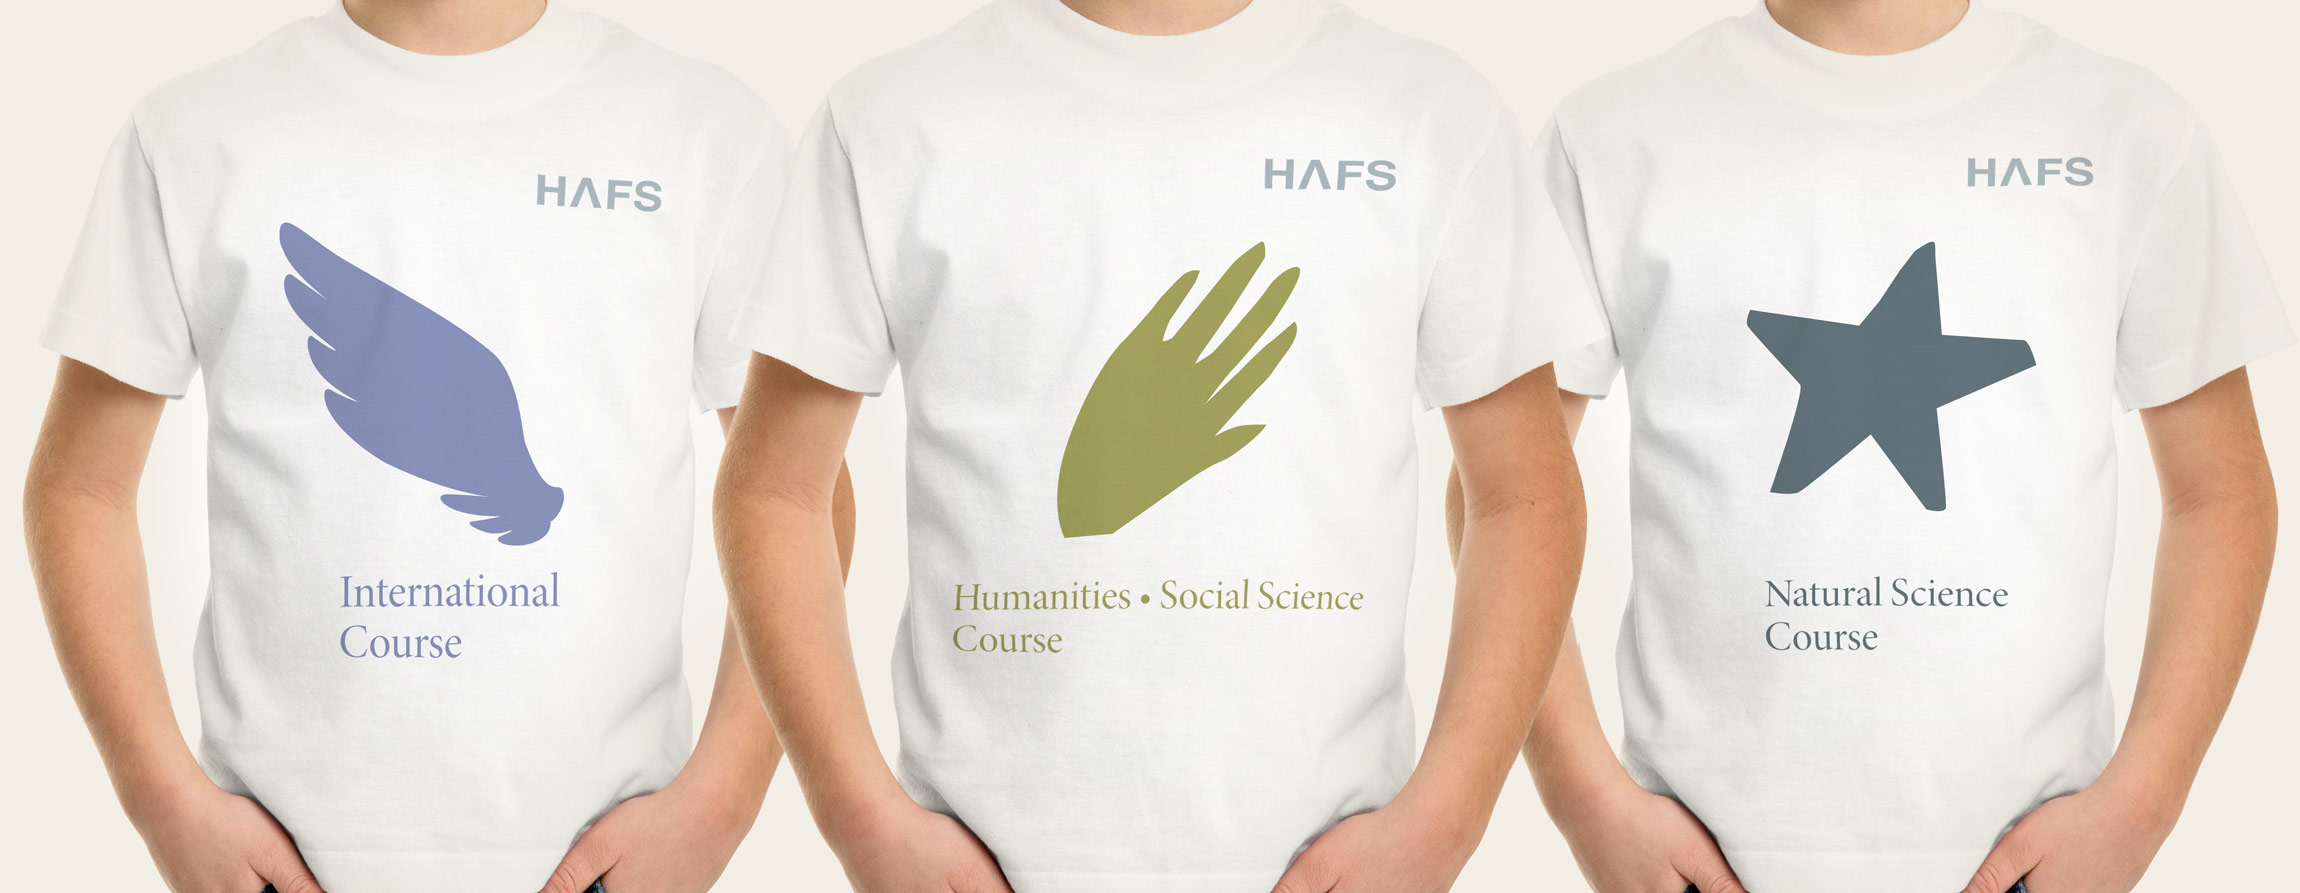 HAFS 용인외국어고등학교 로고, 마크, CI, 브랜드 hafs-symbol-3.jpg